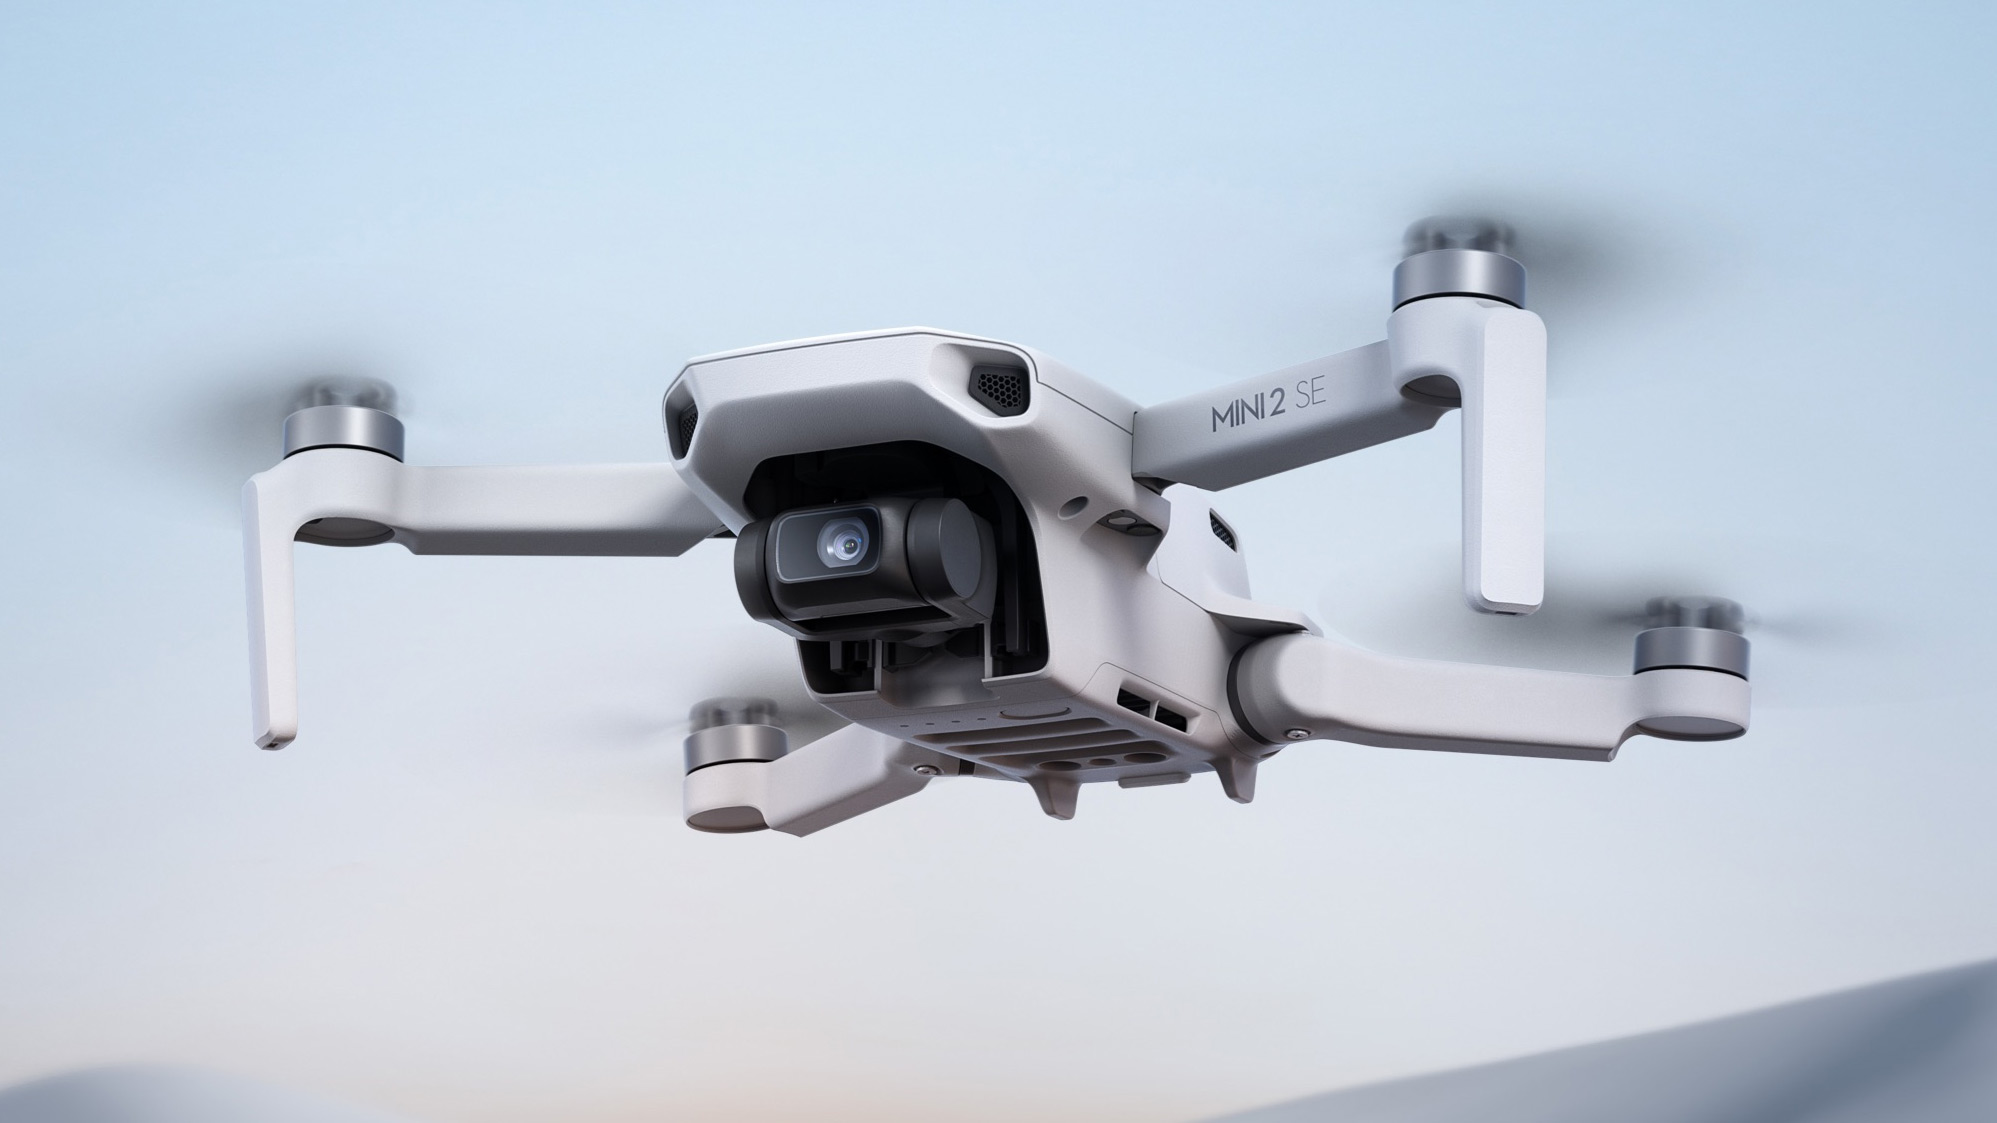 DJI Mini 2 SE - Best budget drone